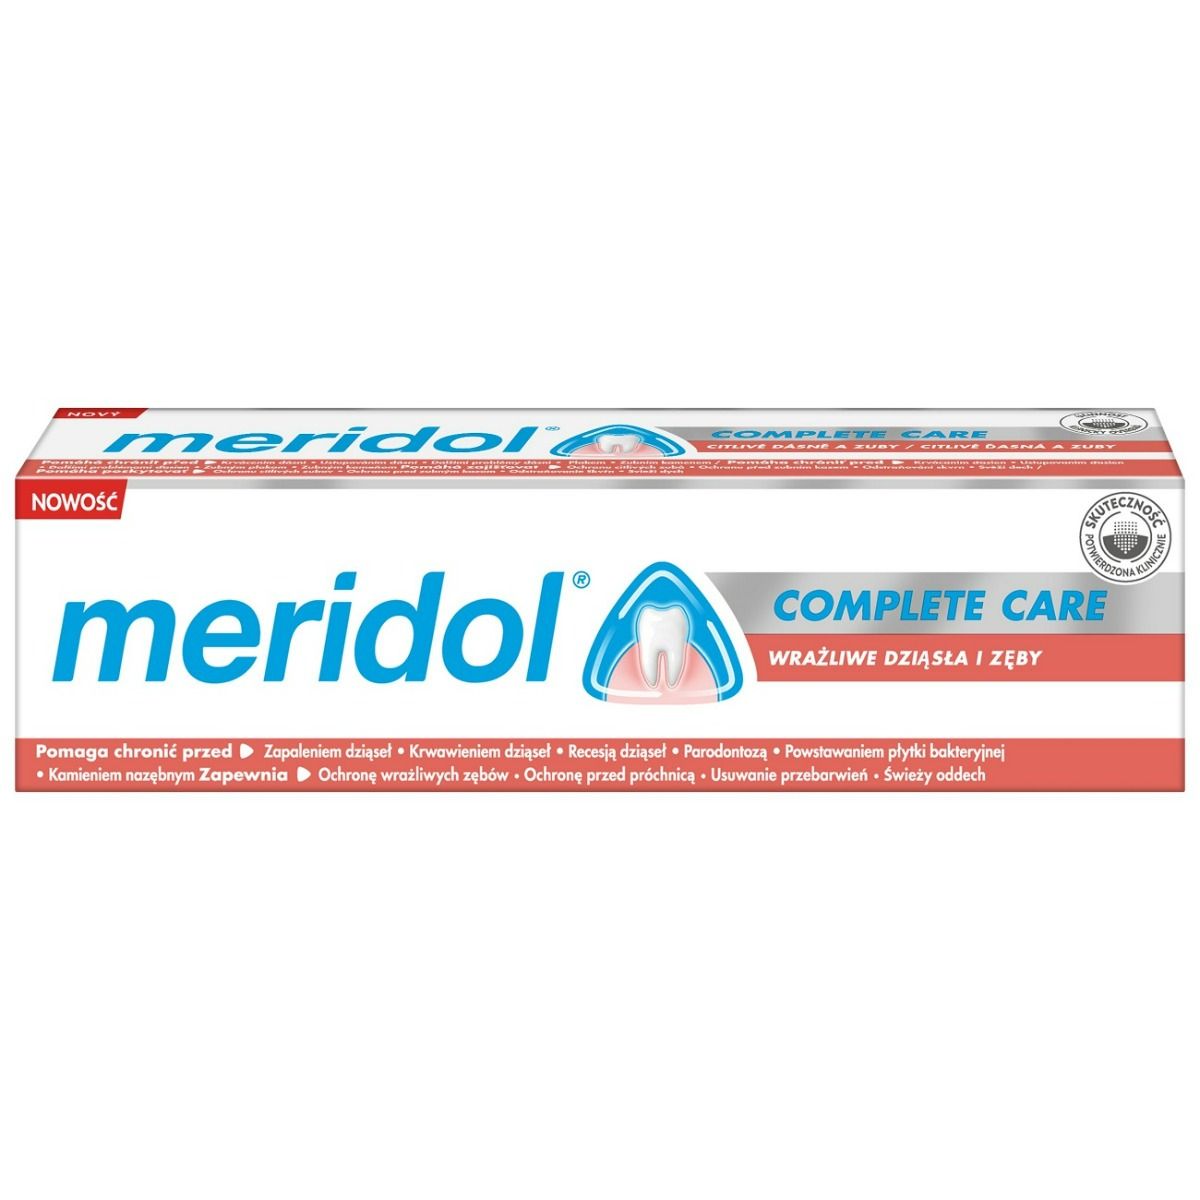 Meridol Complete Care Sensitive Gums&Teeth Зубная паста, 75 ml зубная нить меридол 40 мл meridol